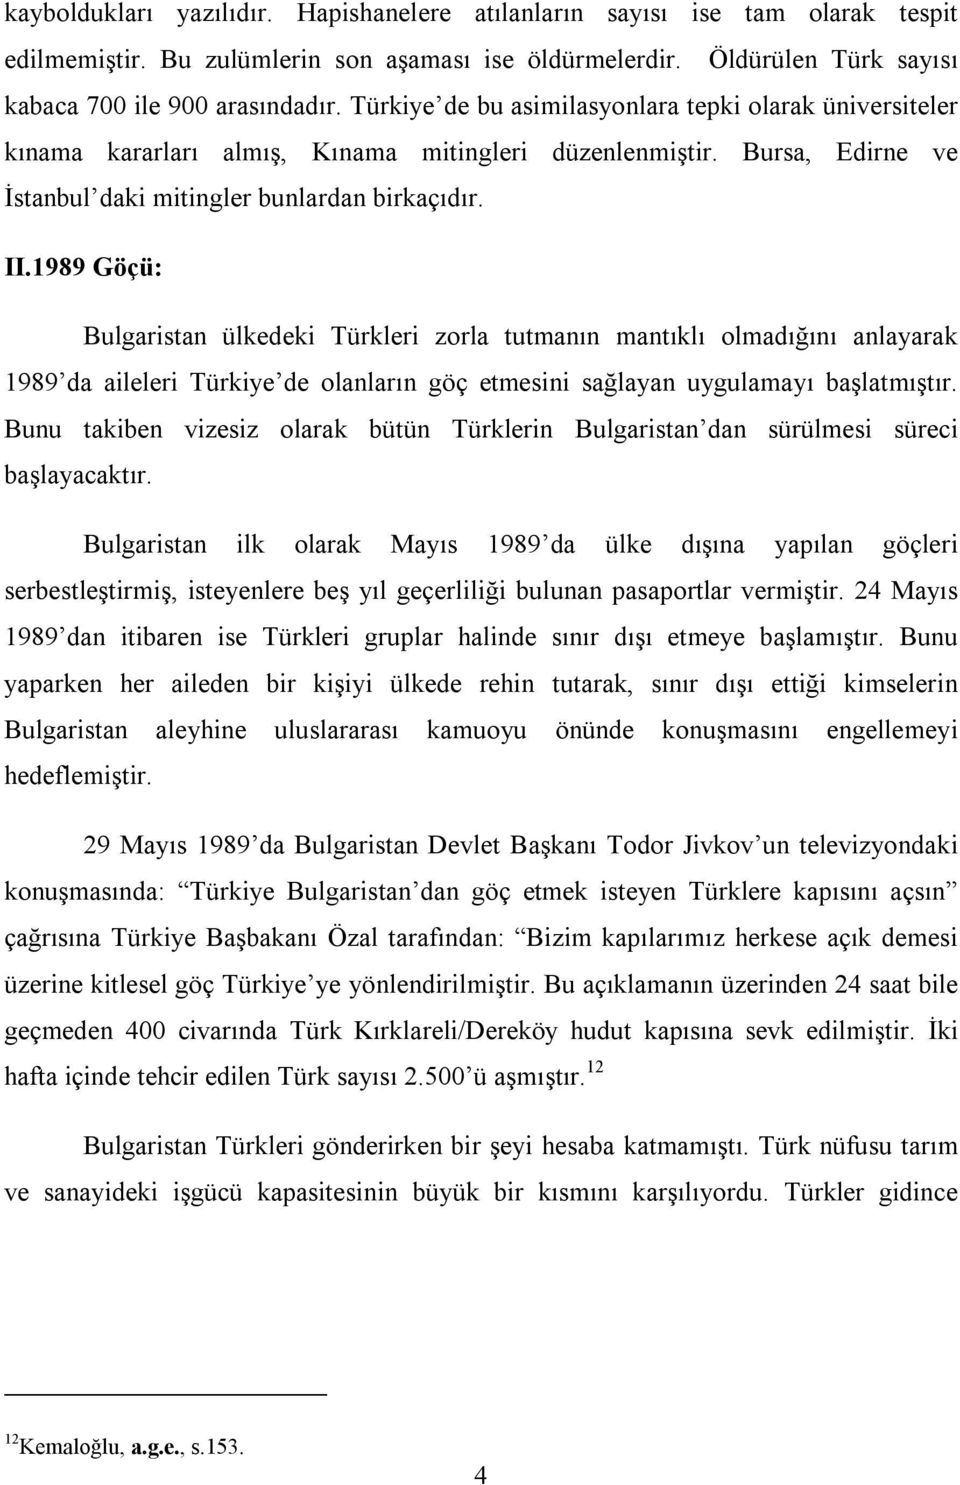 1989 Göçü: Bulgaristan ülkedeki Türkleri zorla tutmanın mantıklı olmadığını anlayarak 1989 da aileleri Türkiye de olanların göç etmesini sağlayan uygulamayı başlatmıştır.